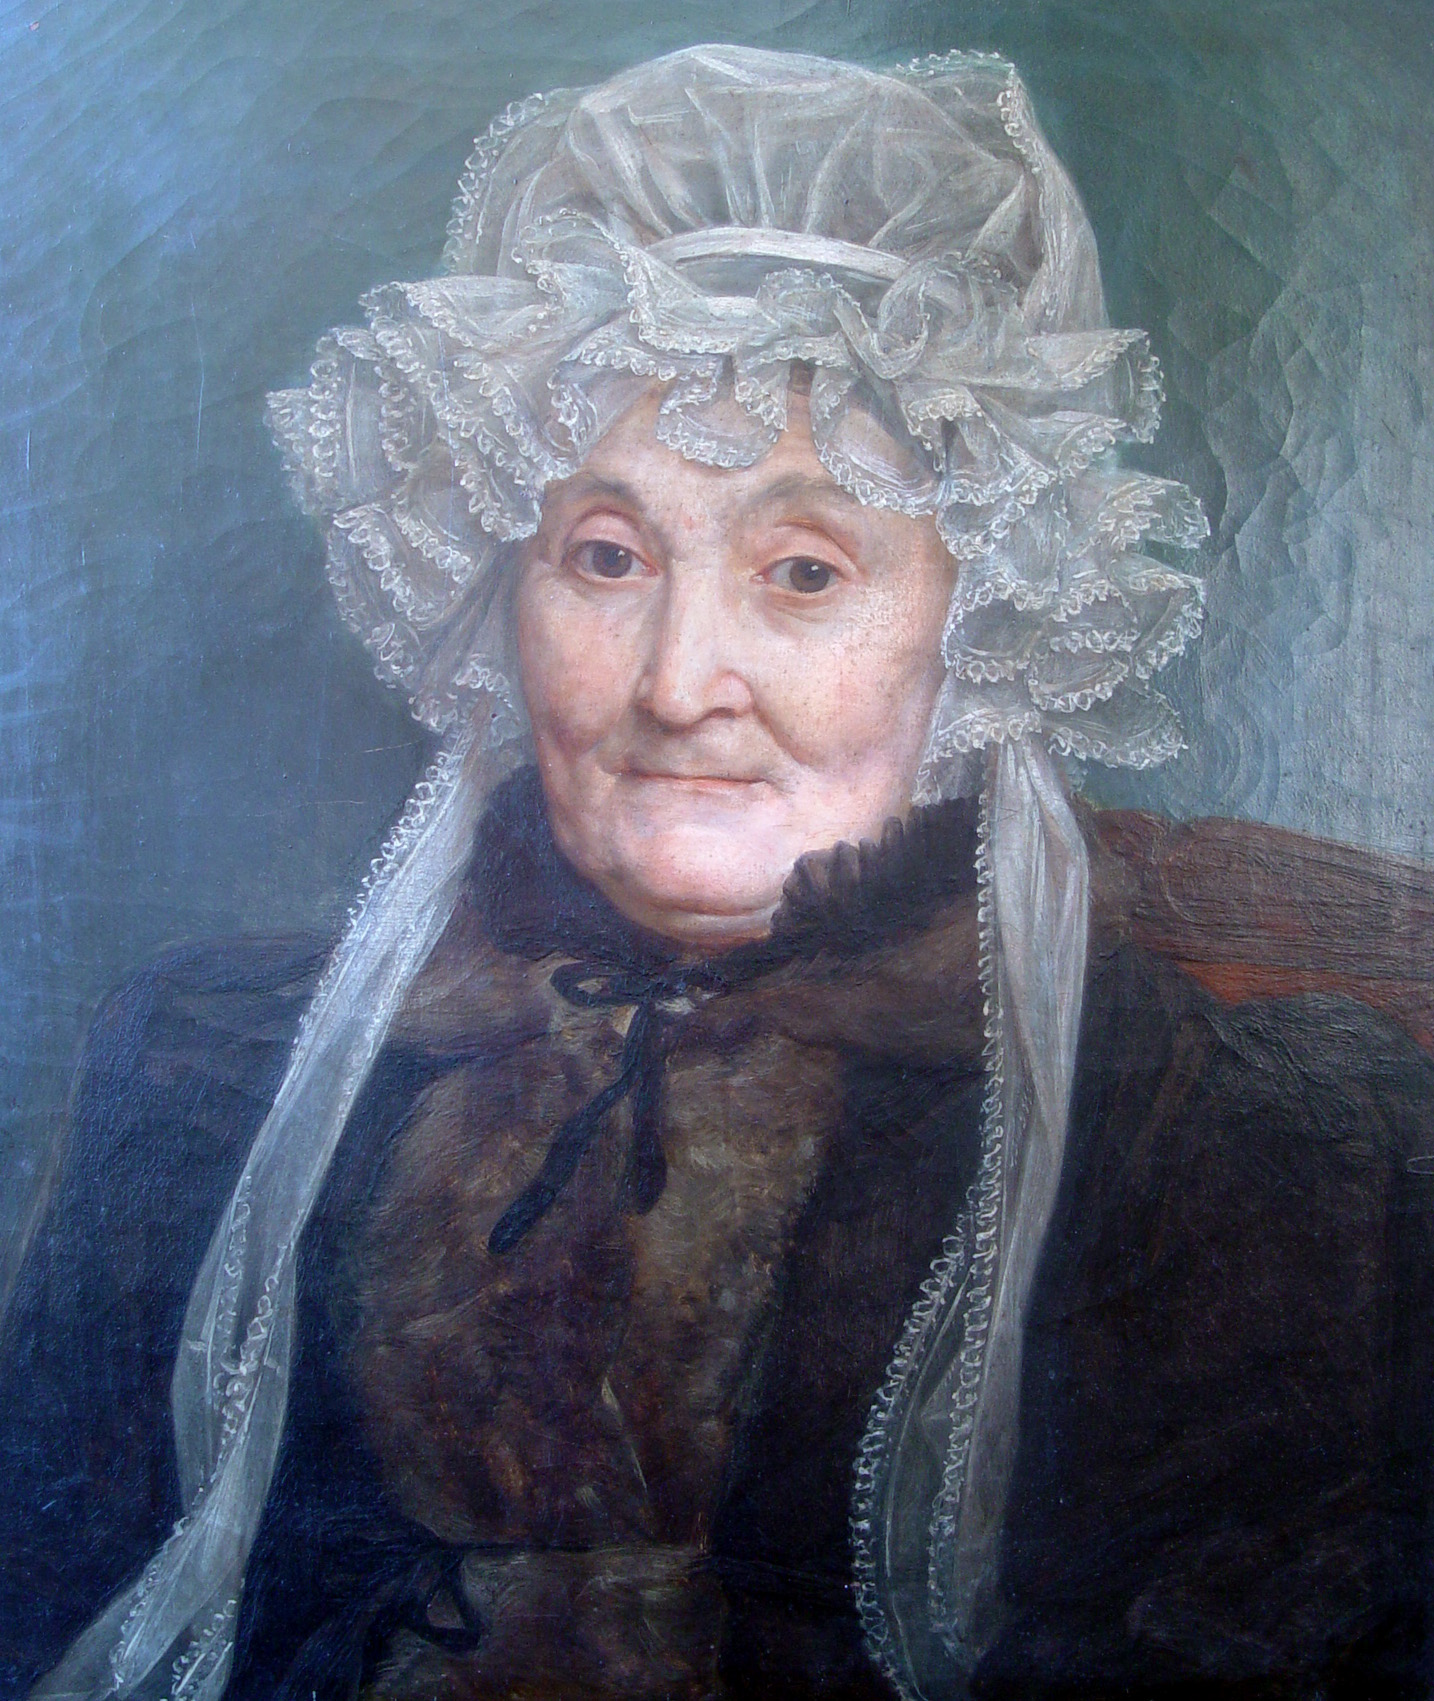 Auguste COUDER (1790-1873). Portrait de Mme Guizot mère, née Sophie Bonicel. Huile sur toile, 1833. Collection particulière. Cliché Jean Bergeret.